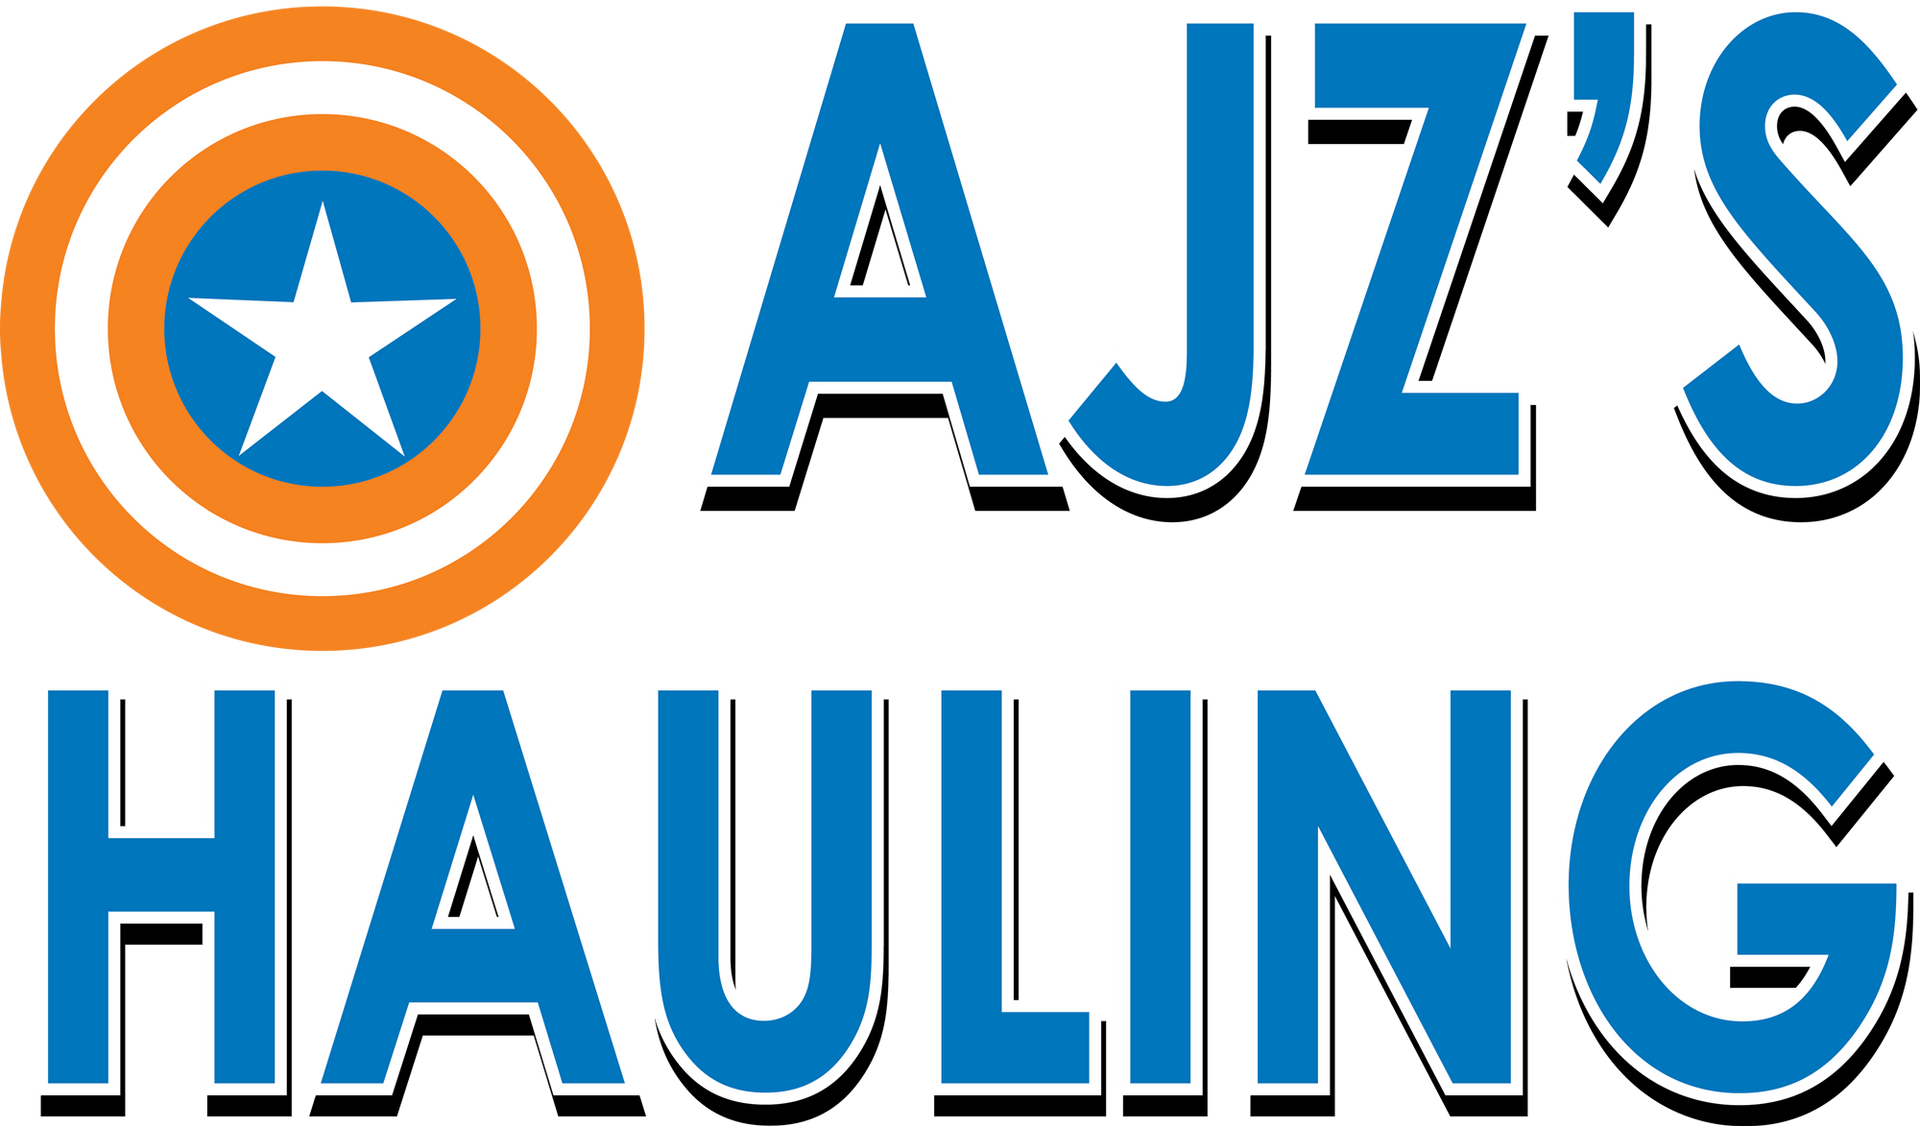 AJZ's Hauling